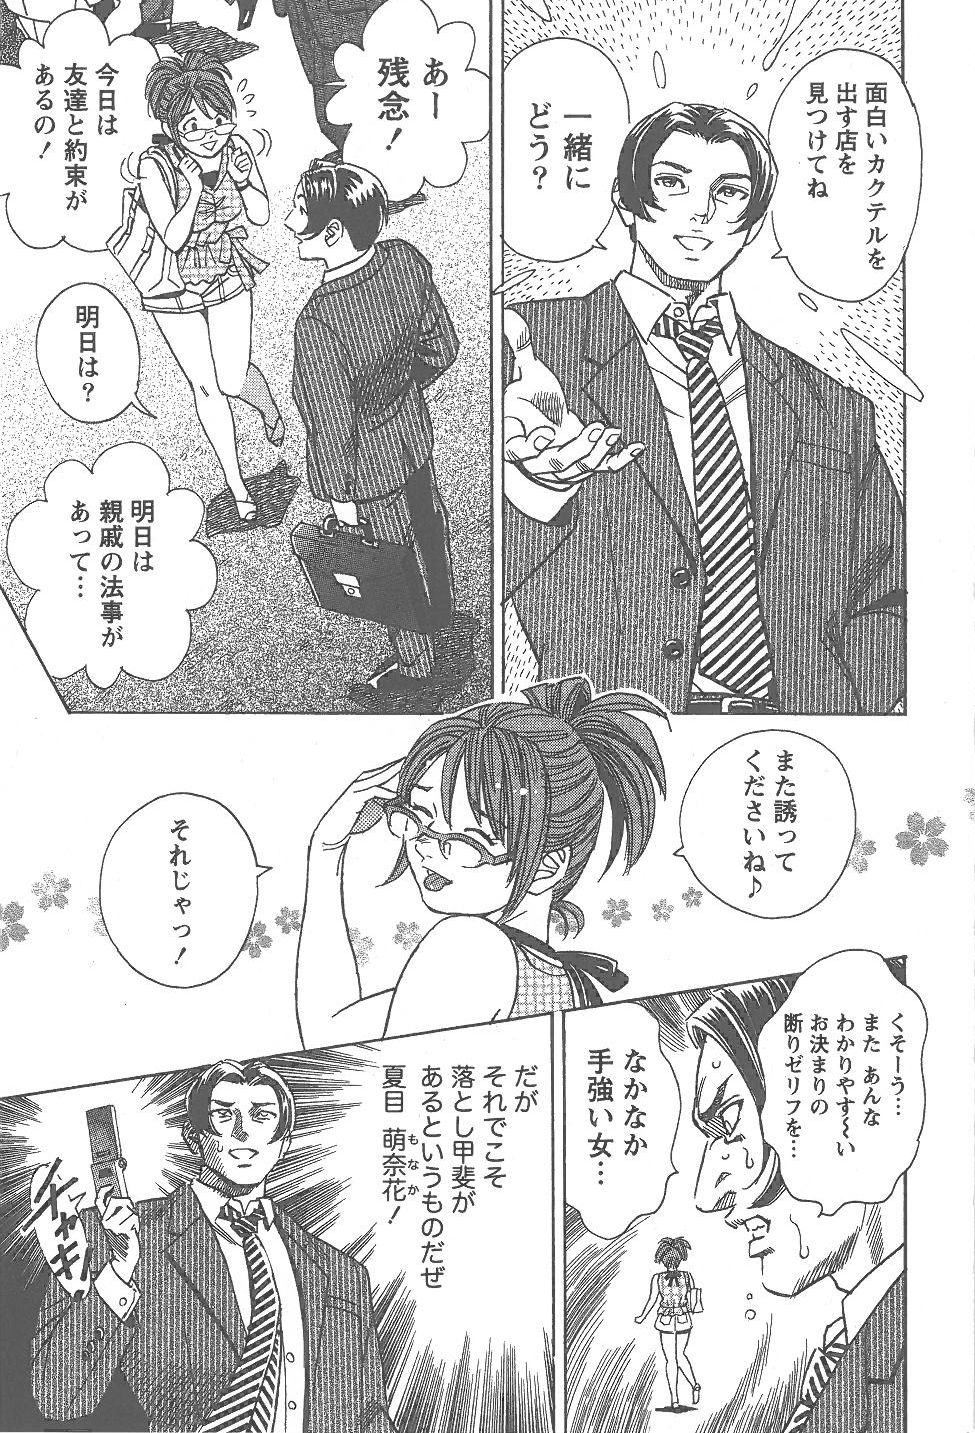 [Tomizawa Jun] Amakuchi Knight 02 page 8 full